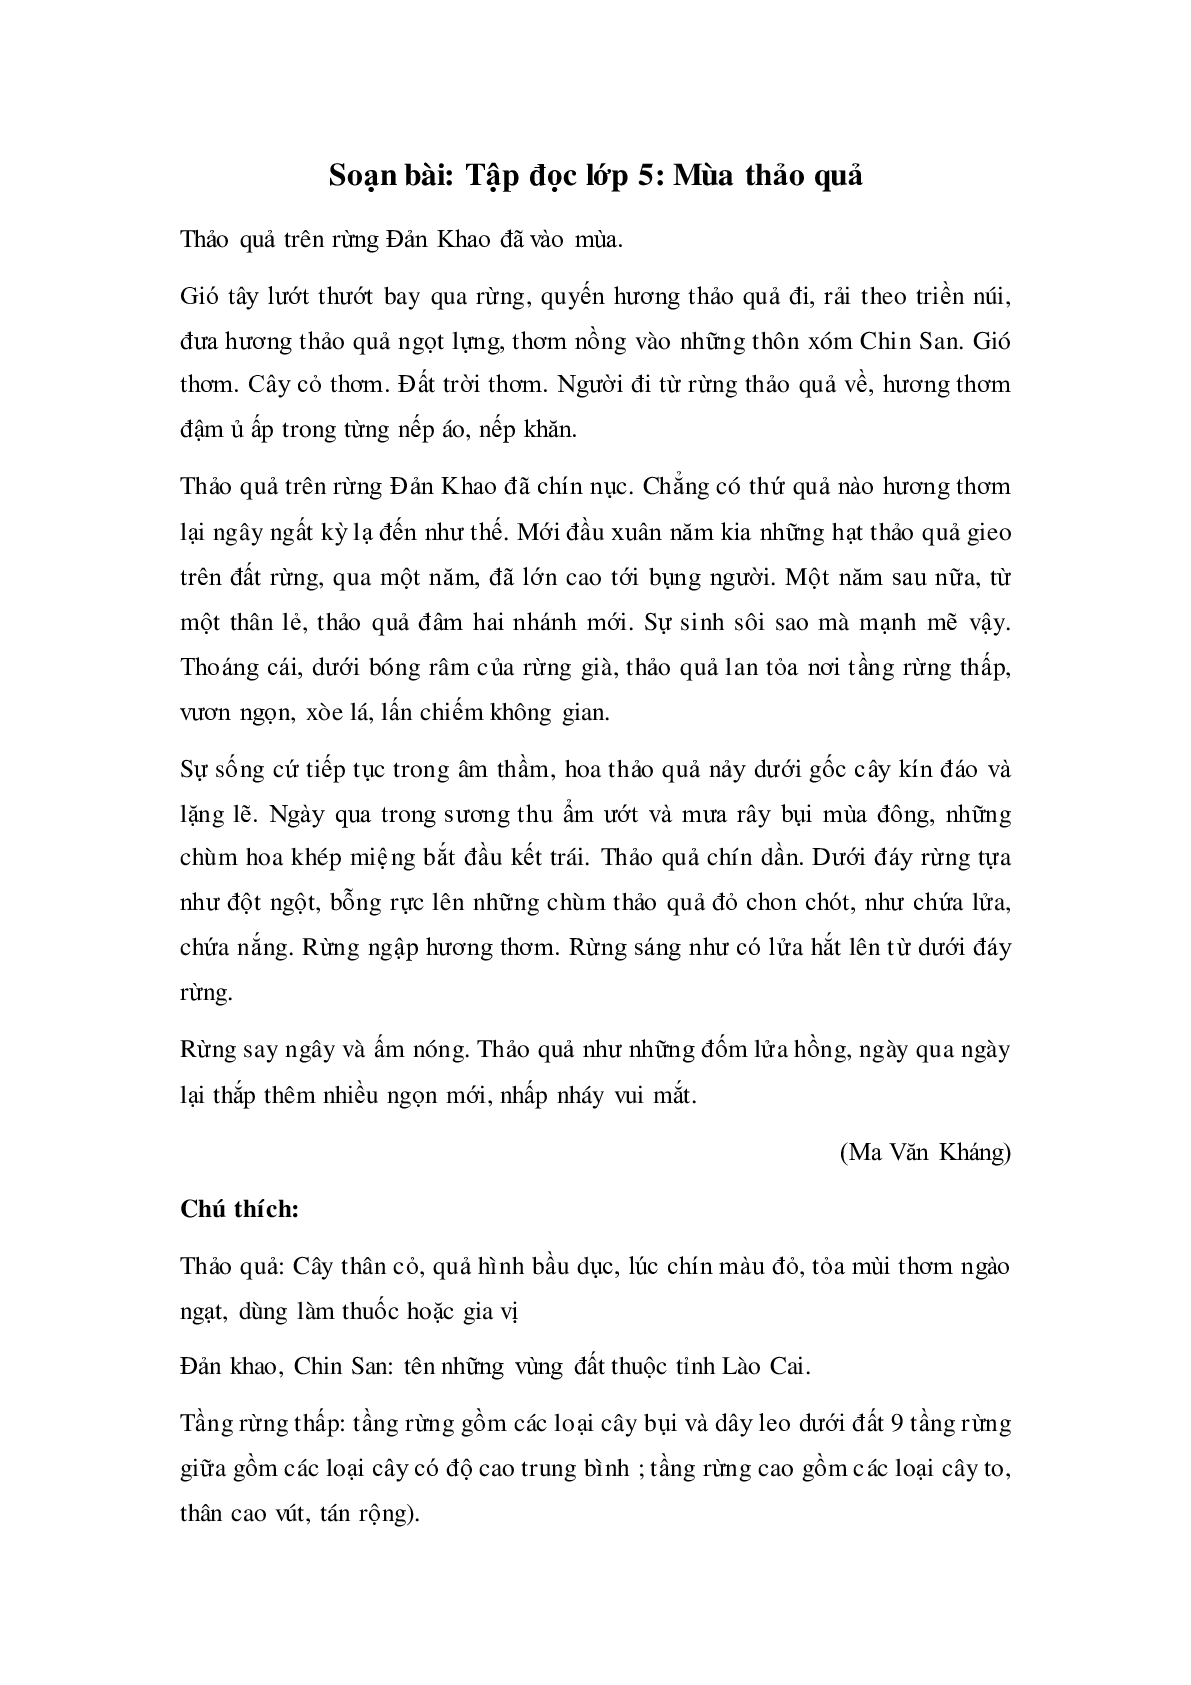 Soạn Tiếng Việt lớp 5: Tập đọc: Mùa thảo quả mới nhất (trang 1)